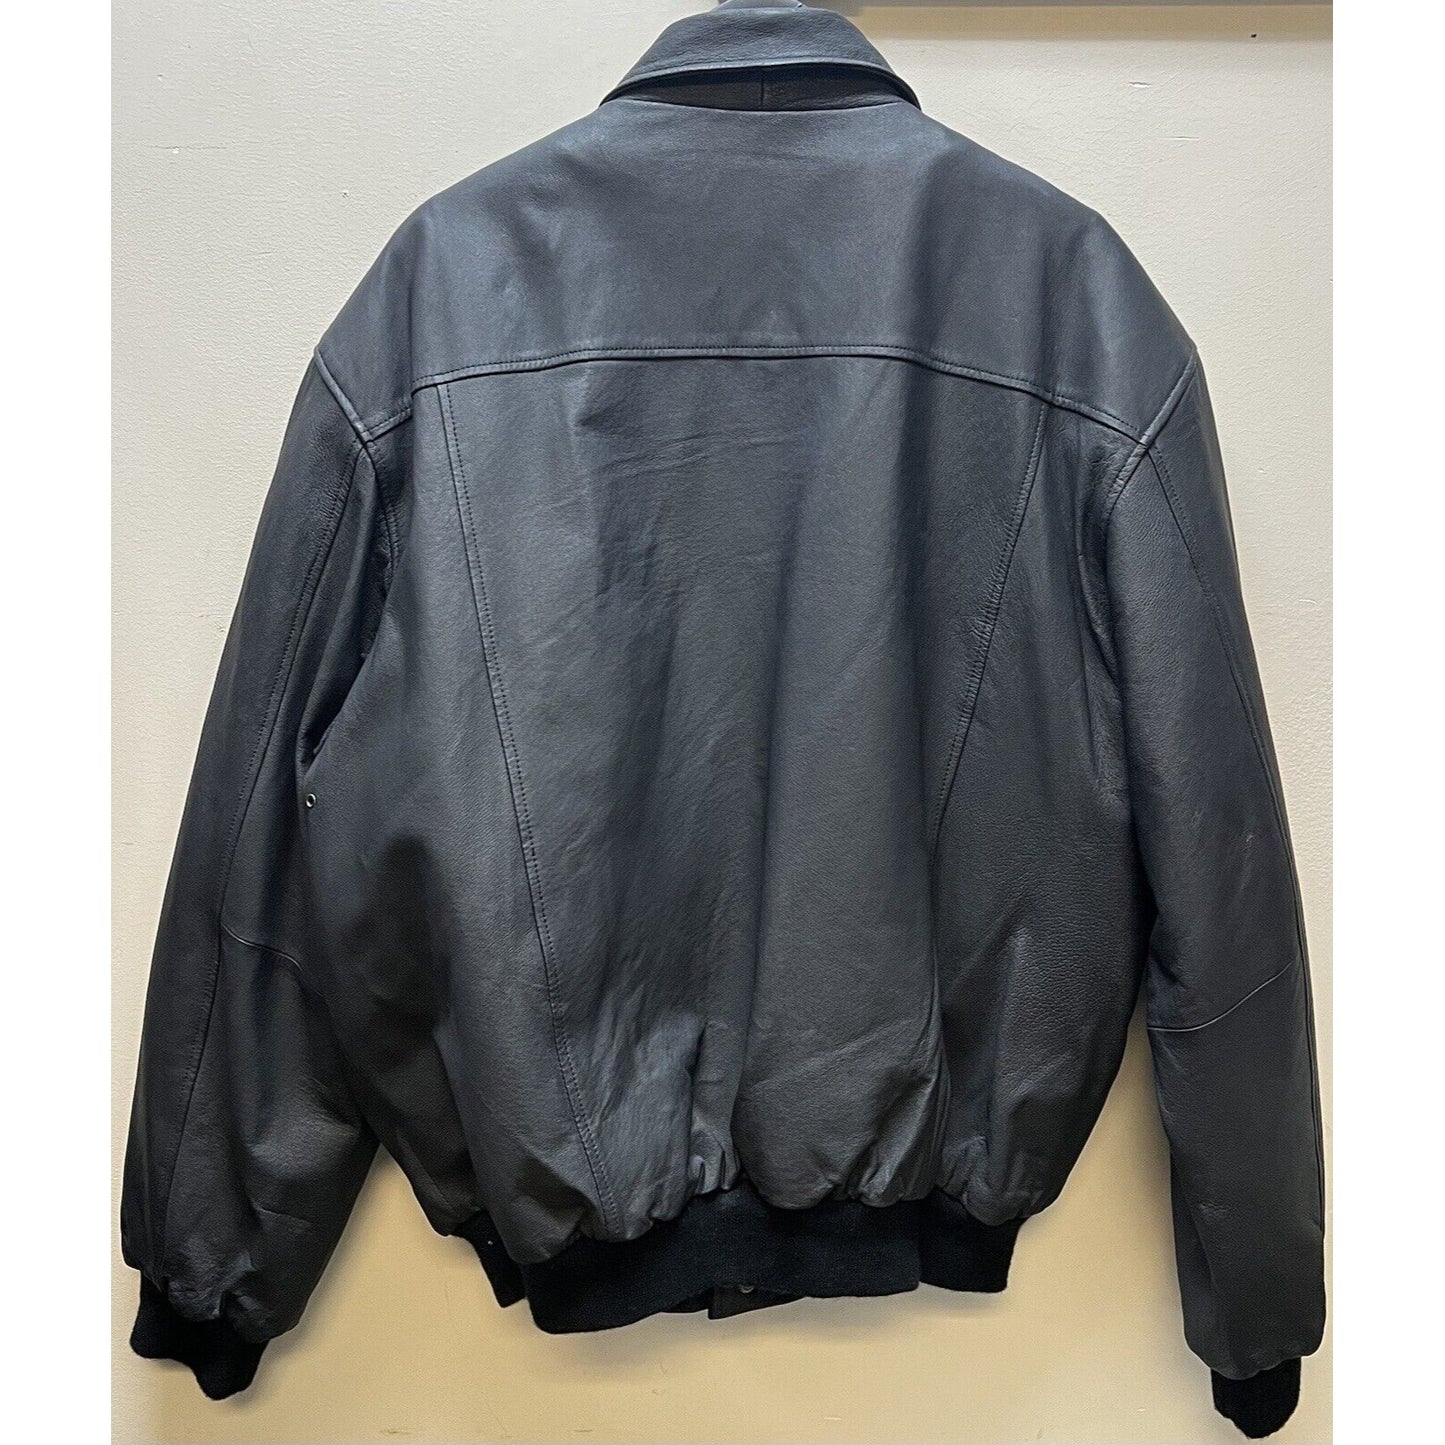 DreamWorks SKG Collared Black Leather Bomber Jacket - Large